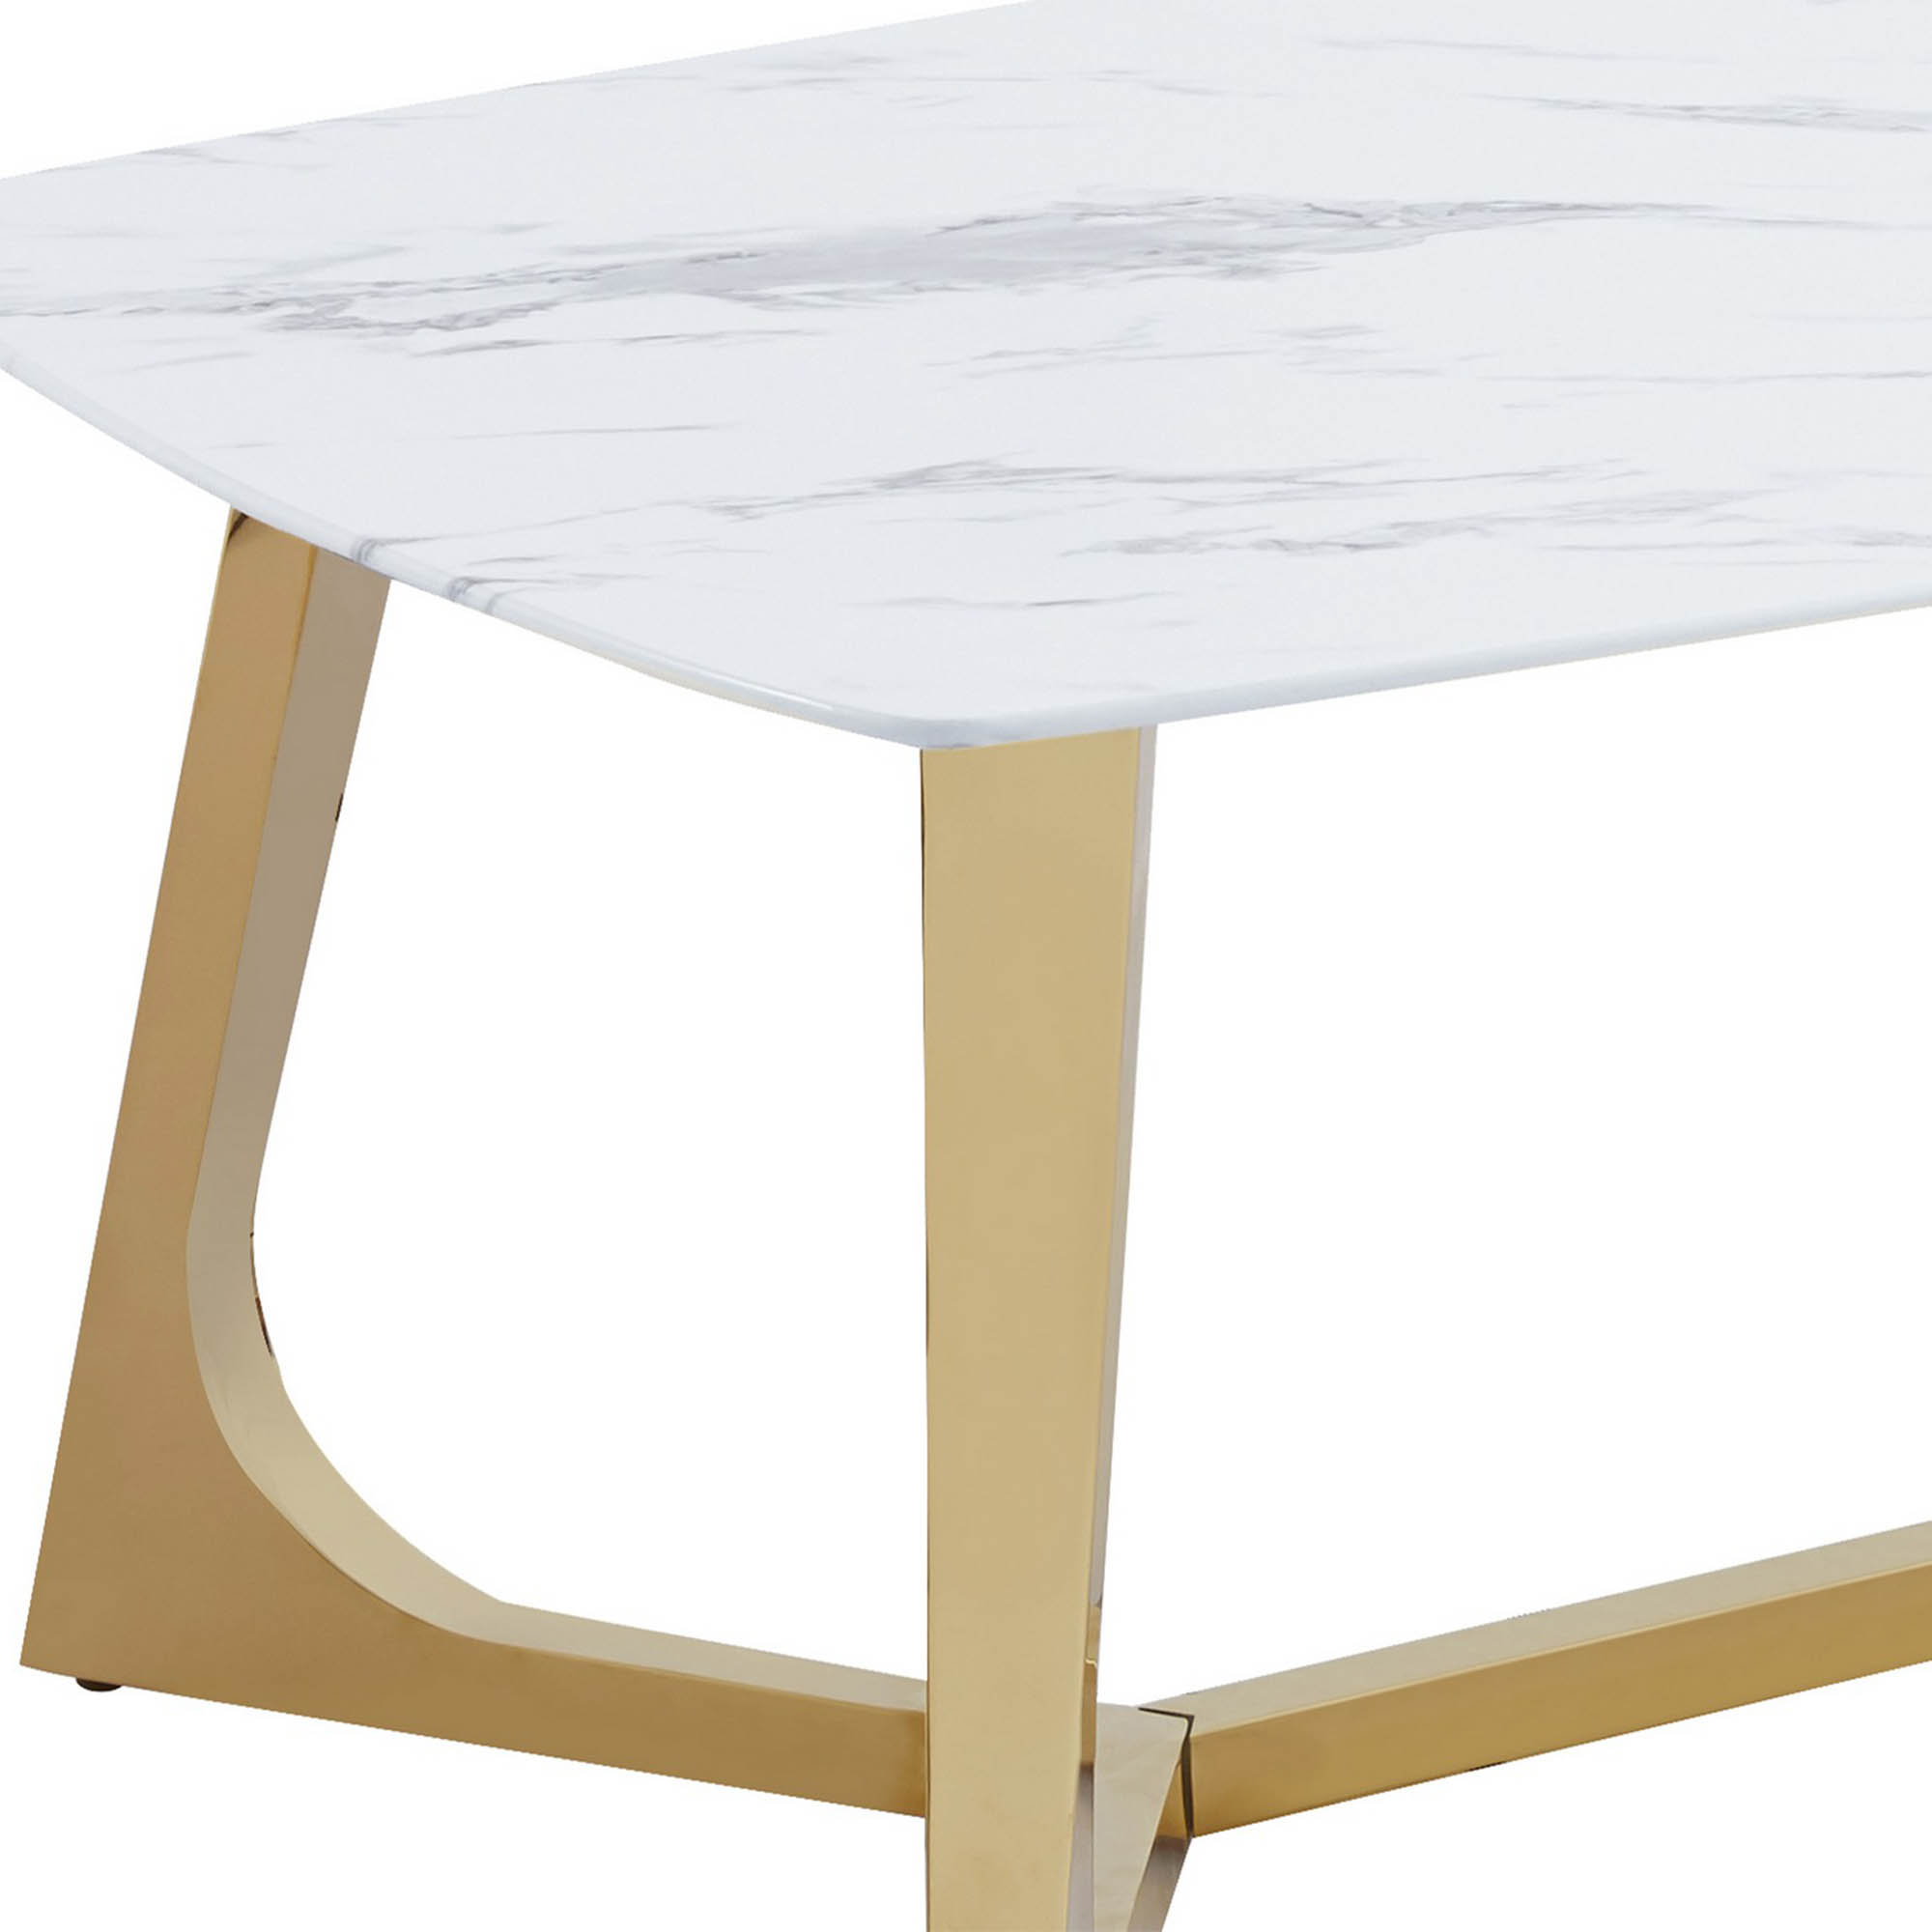 OPERA - Table basse rectangulaire design effet marbre blanc et doré